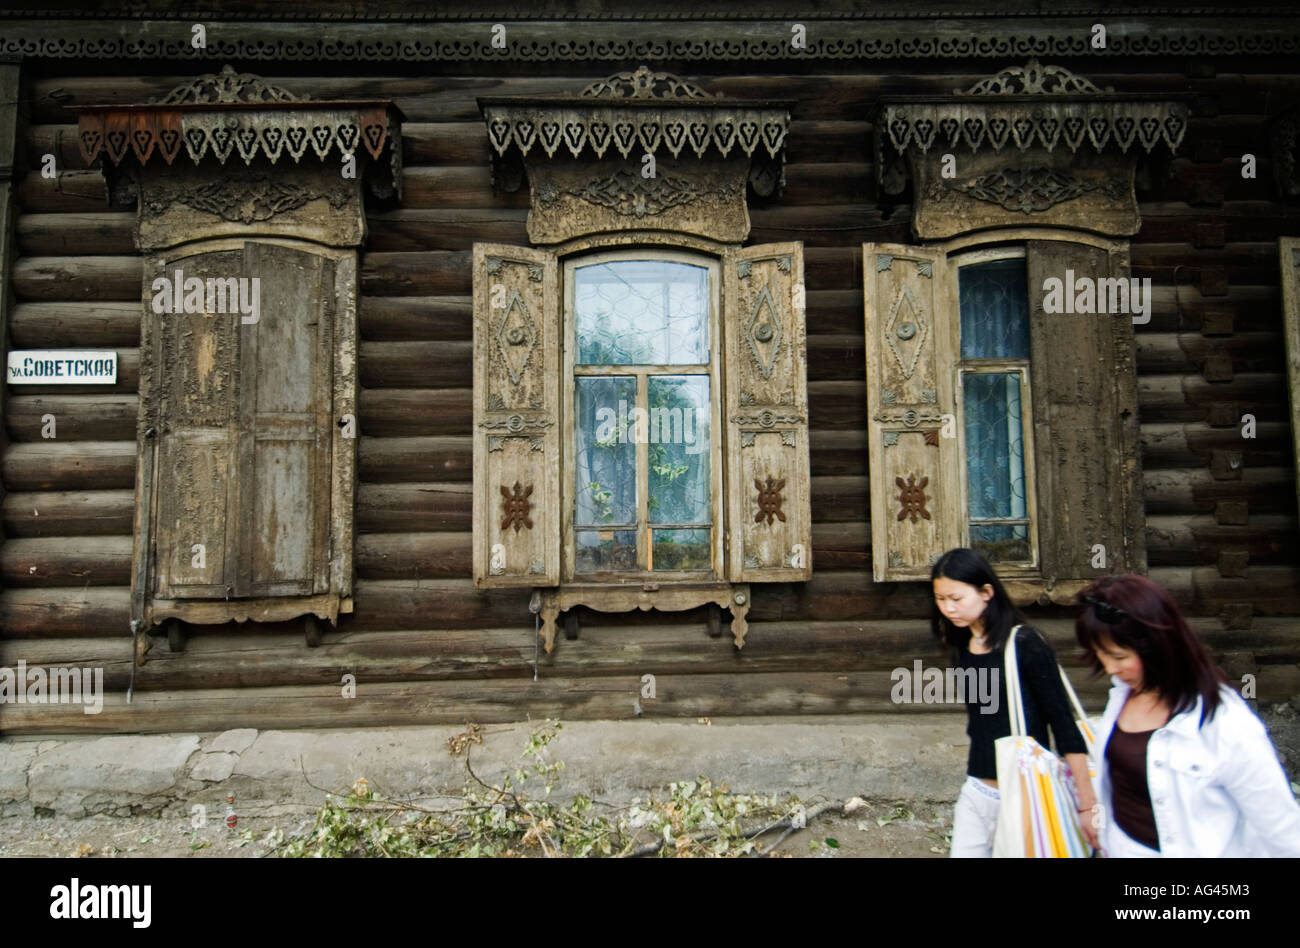 Fenêtres en bois ornés d'dans maison à Oulan-oudé Sibérie Russie 2006 Banque D'Images